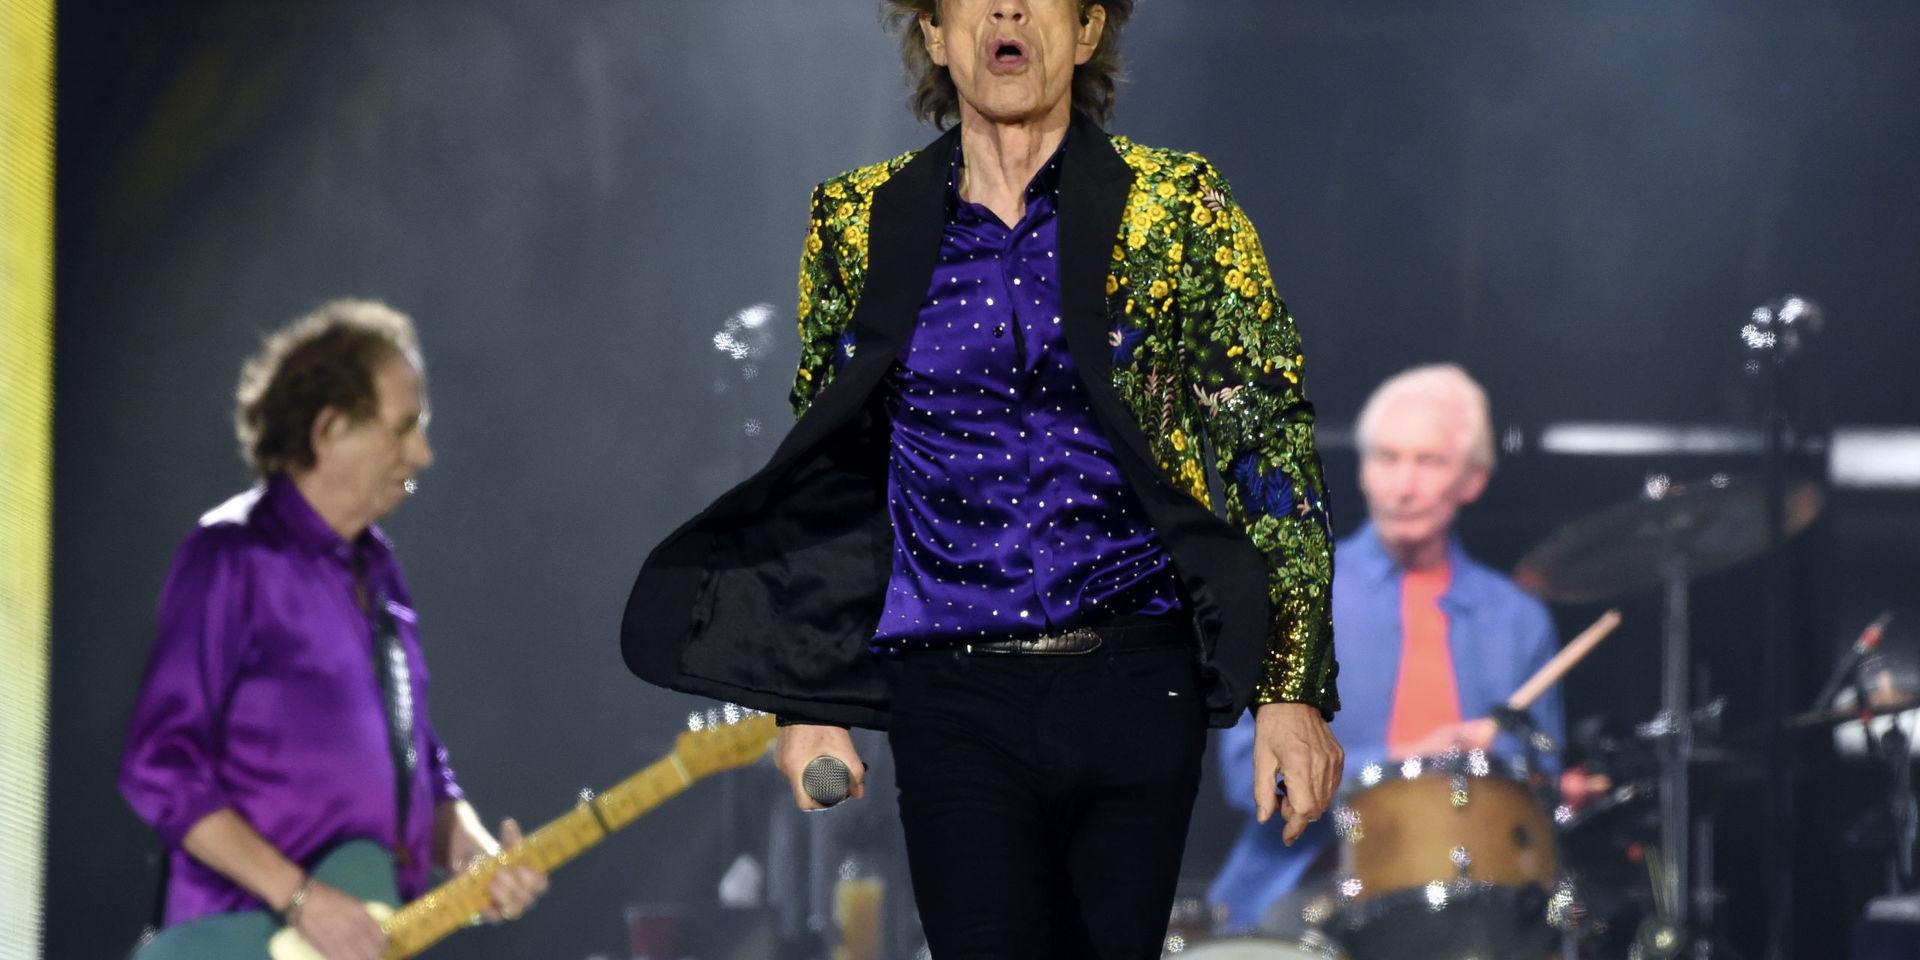 Att man kan vara vital efter 70 är väl Mick Jagger och de andra i Rolling Stones tecken på. I år blir sångaren 77 år.